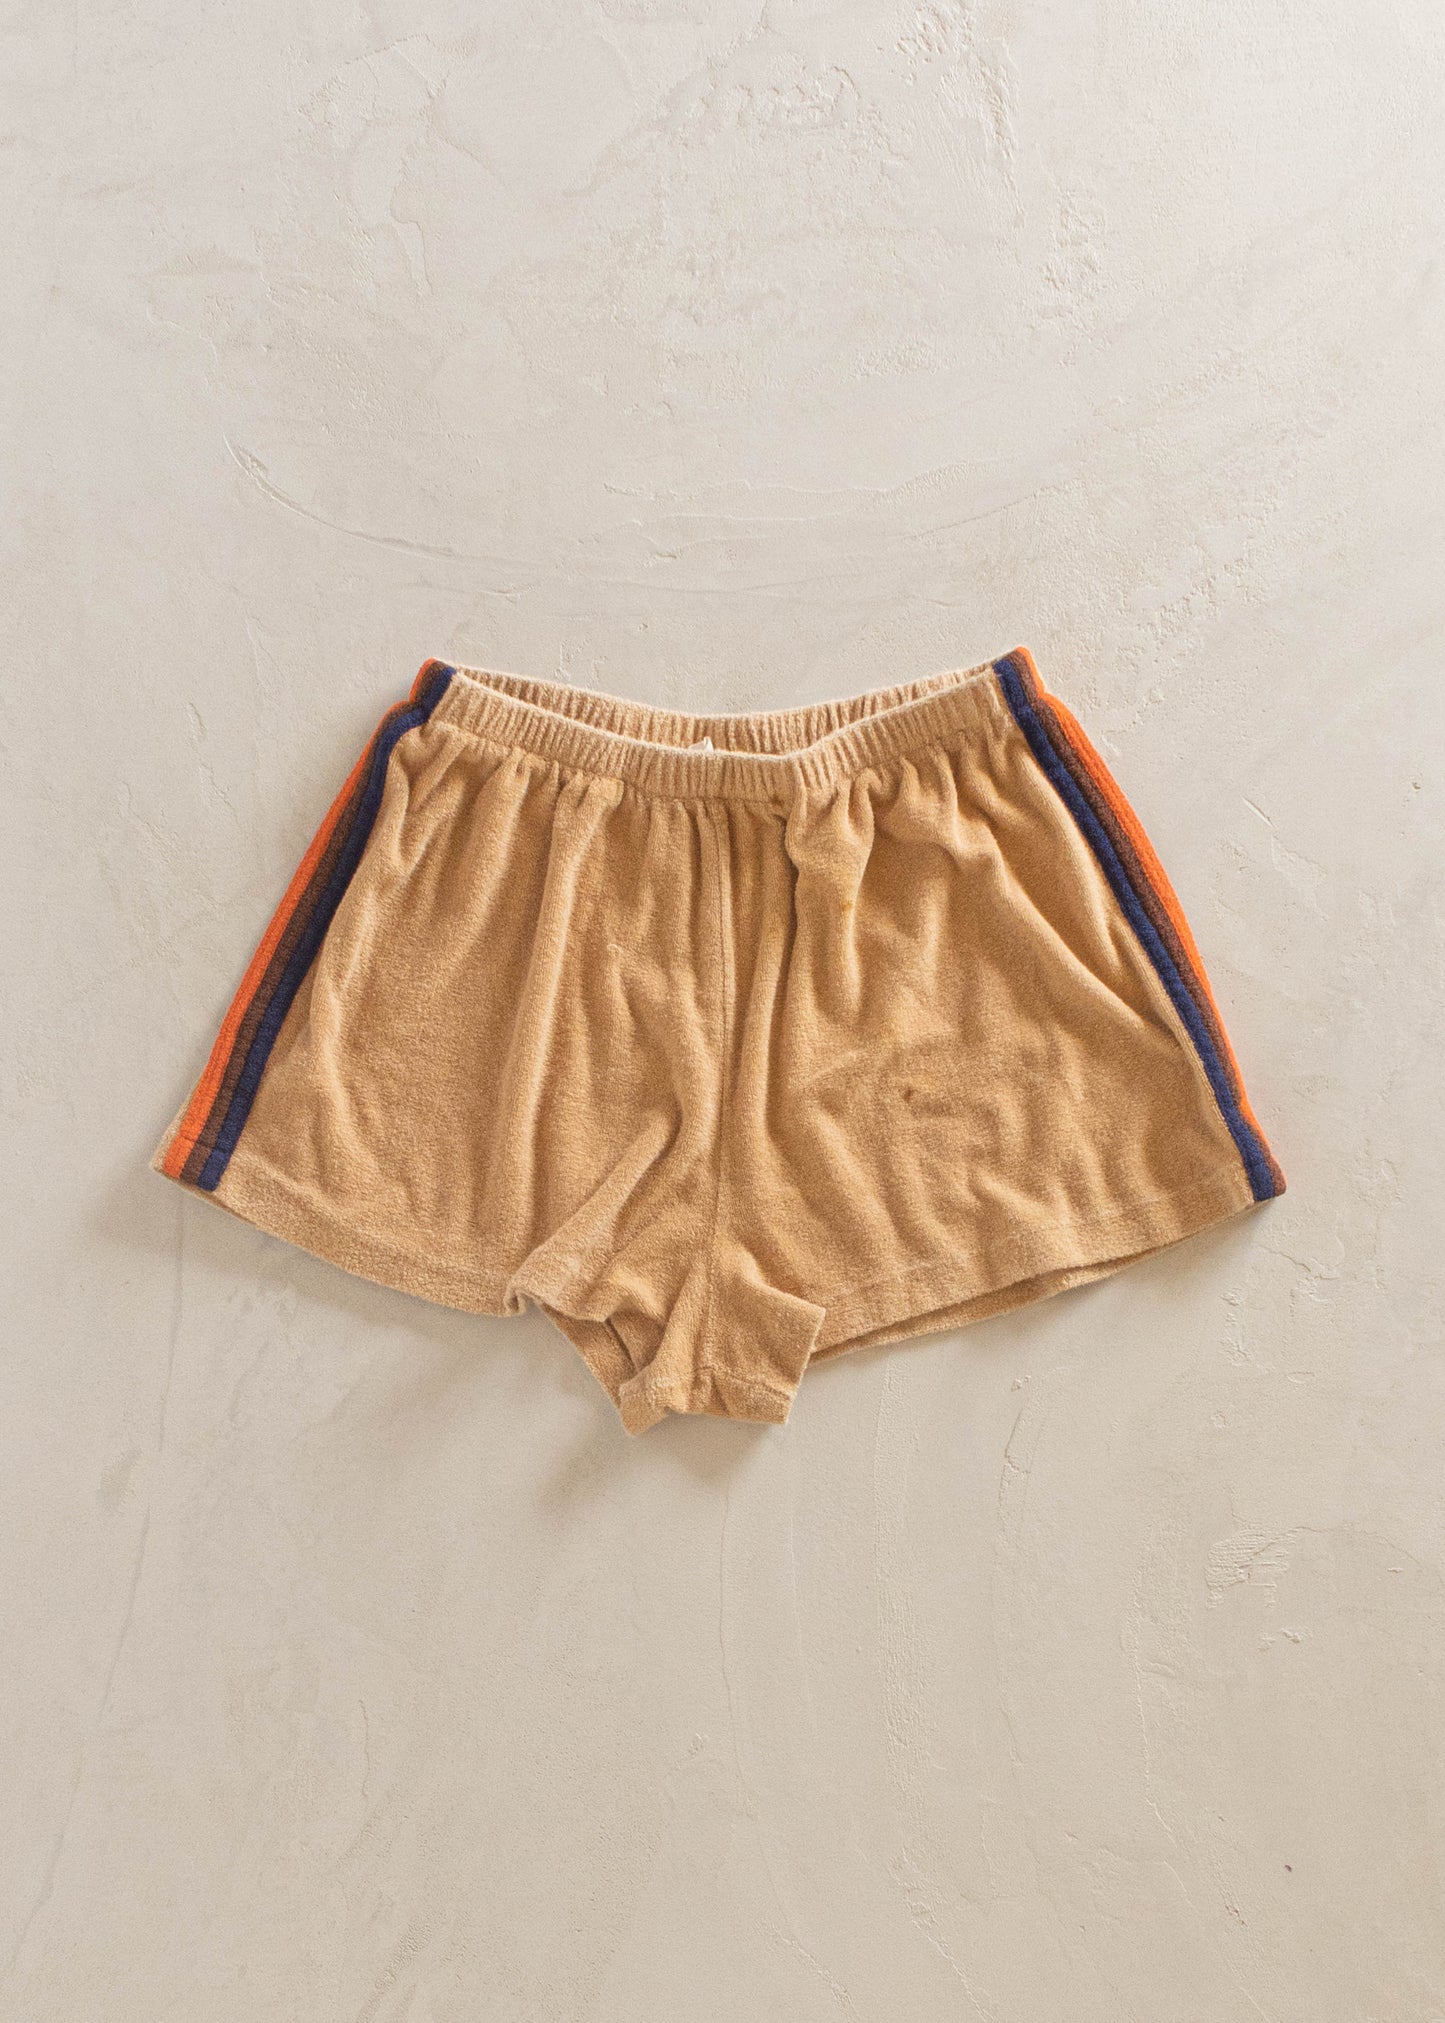 1970s Central Park Terry Cloth Short Set Size XS/S